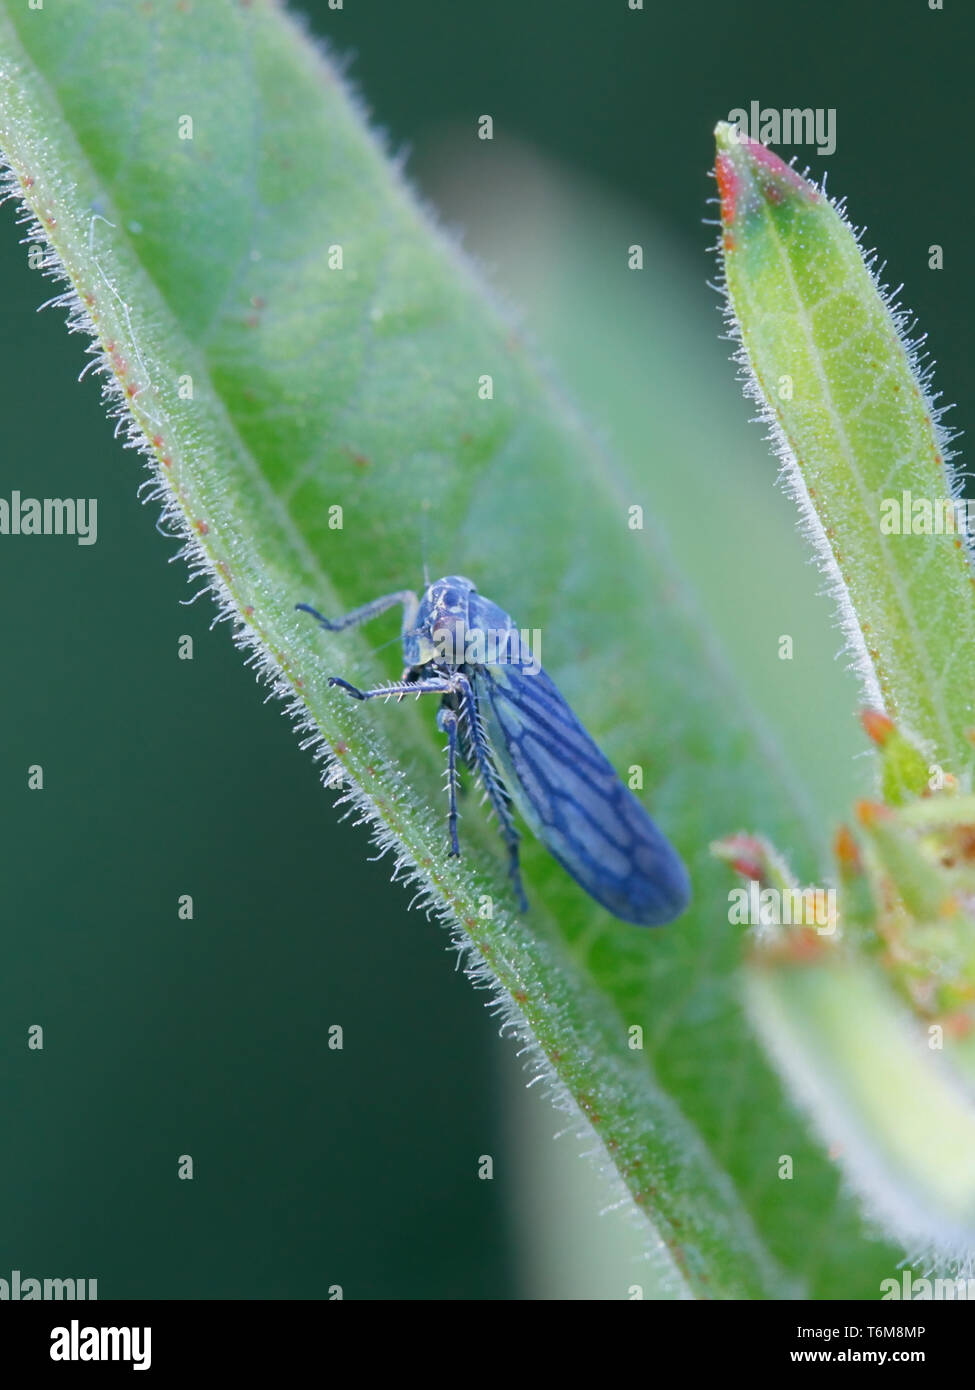 Sonronius dahlbomi, petite cicadelle bleu reposant sur salicaire en Finlande Banque D'Images